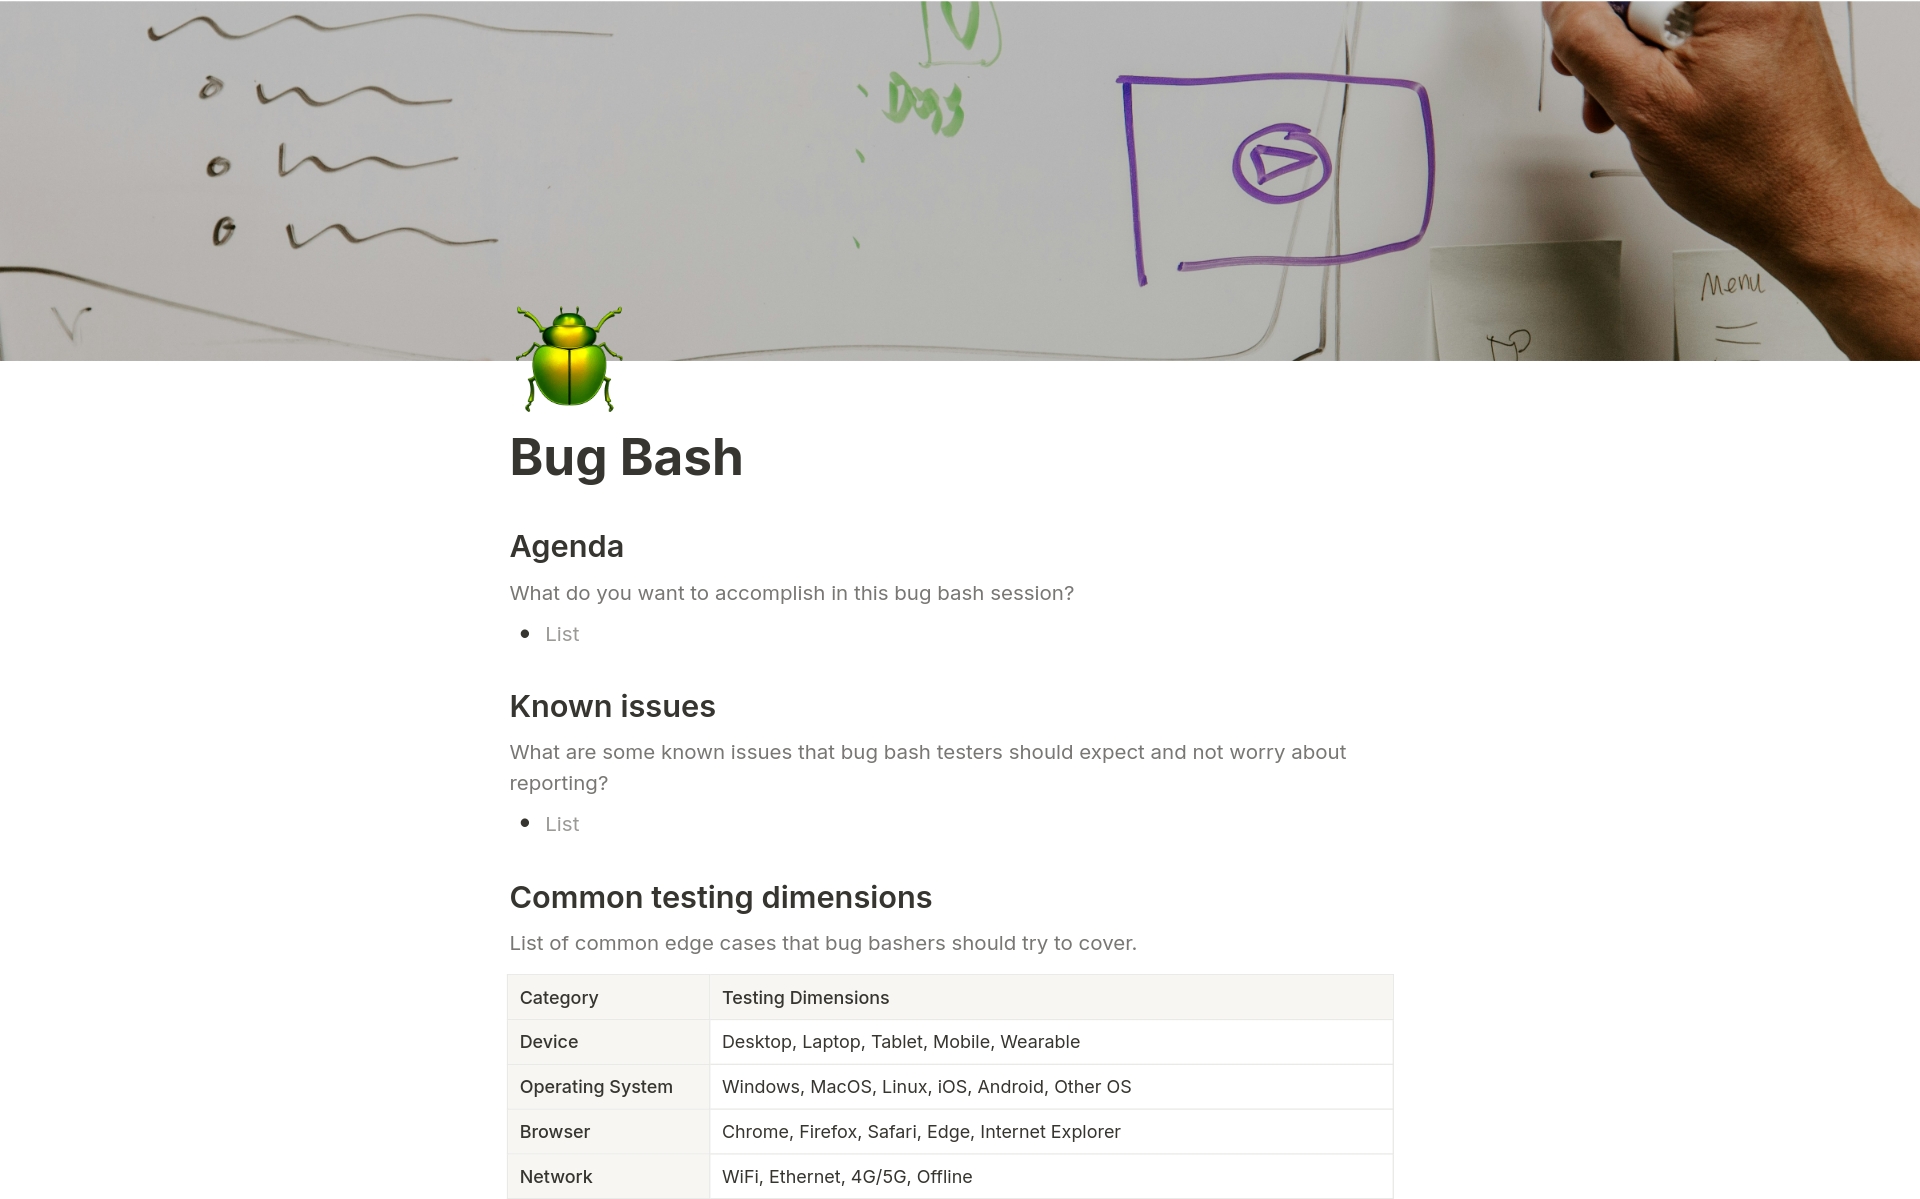 Aperçu du modèle de Bug Bash